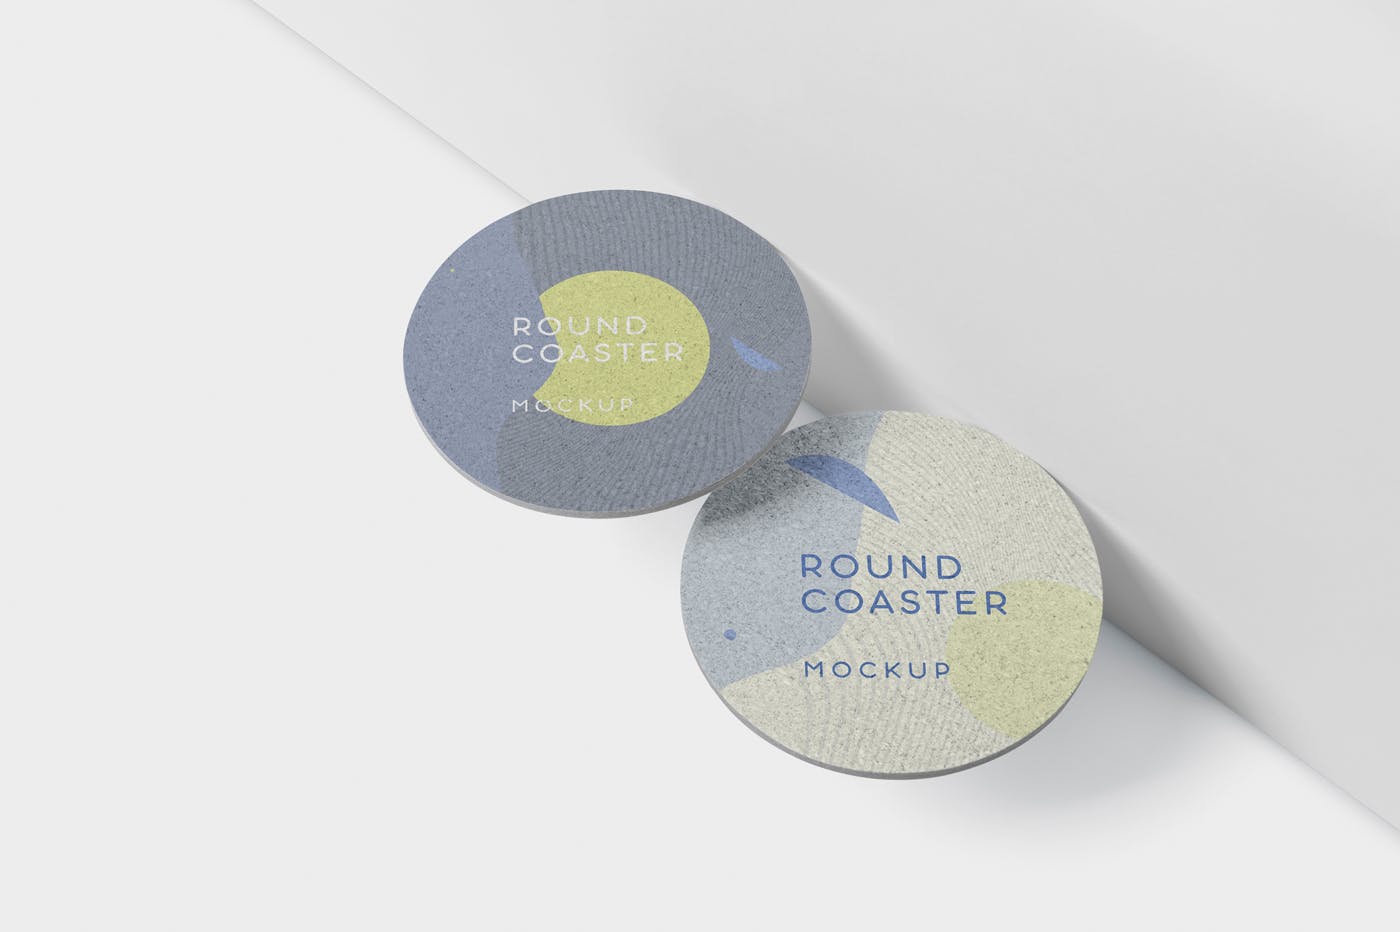 圆形杯垫图案设计效果图蚂蚁素材精选 Round Coaster Mock-Up – Medium Size插图(4)